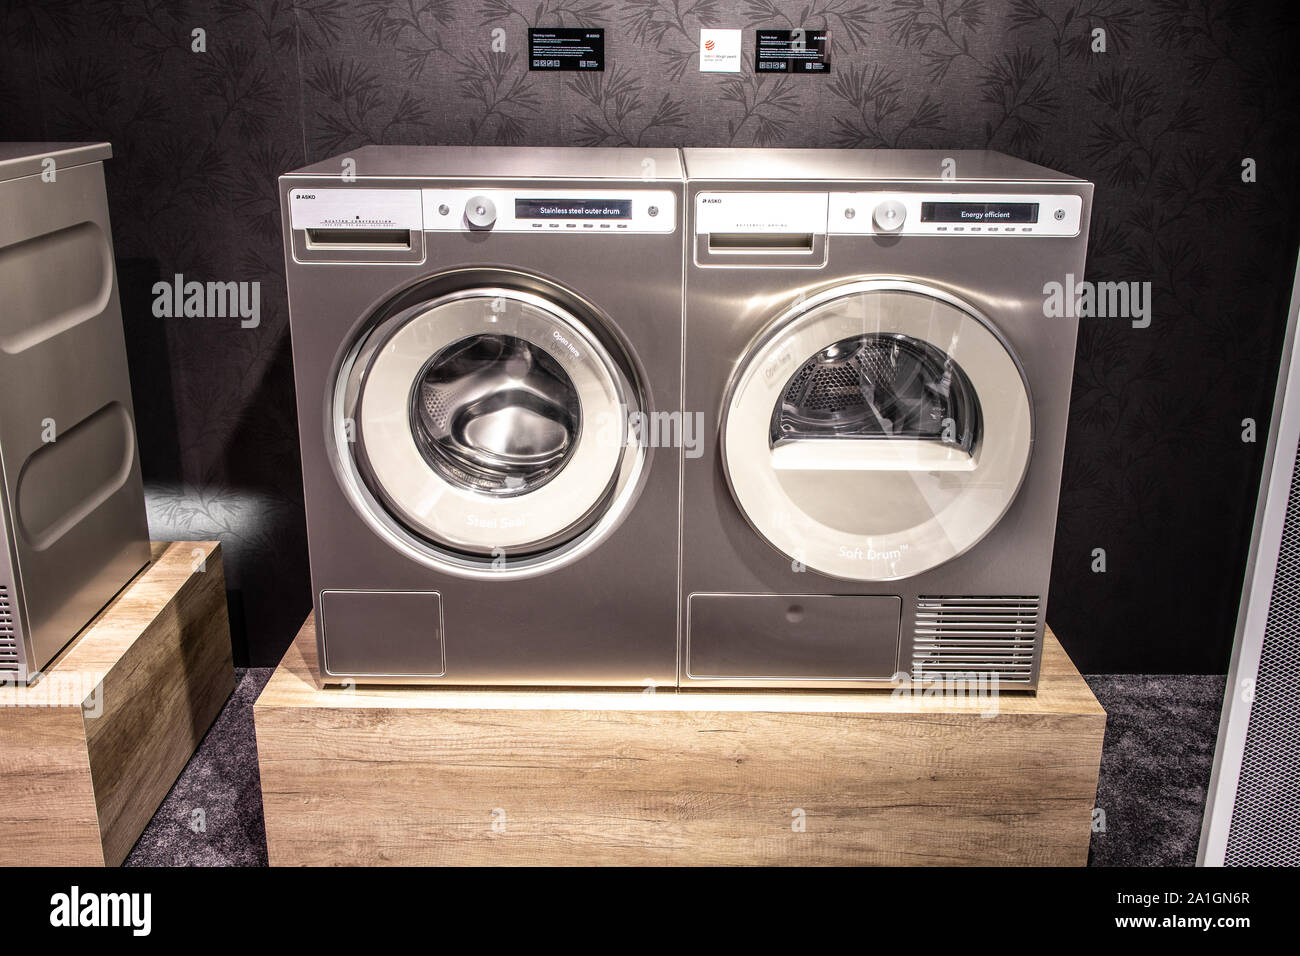 Berlin, Deutschland, Sep 2019 Asko Waschmaschine Wäschetrockner auf  Anzeige, Asko Appliances ab Ausstellung showroom stand auf globale  Innovationen zeigen IFA 20 Stockfotografie - Alamy